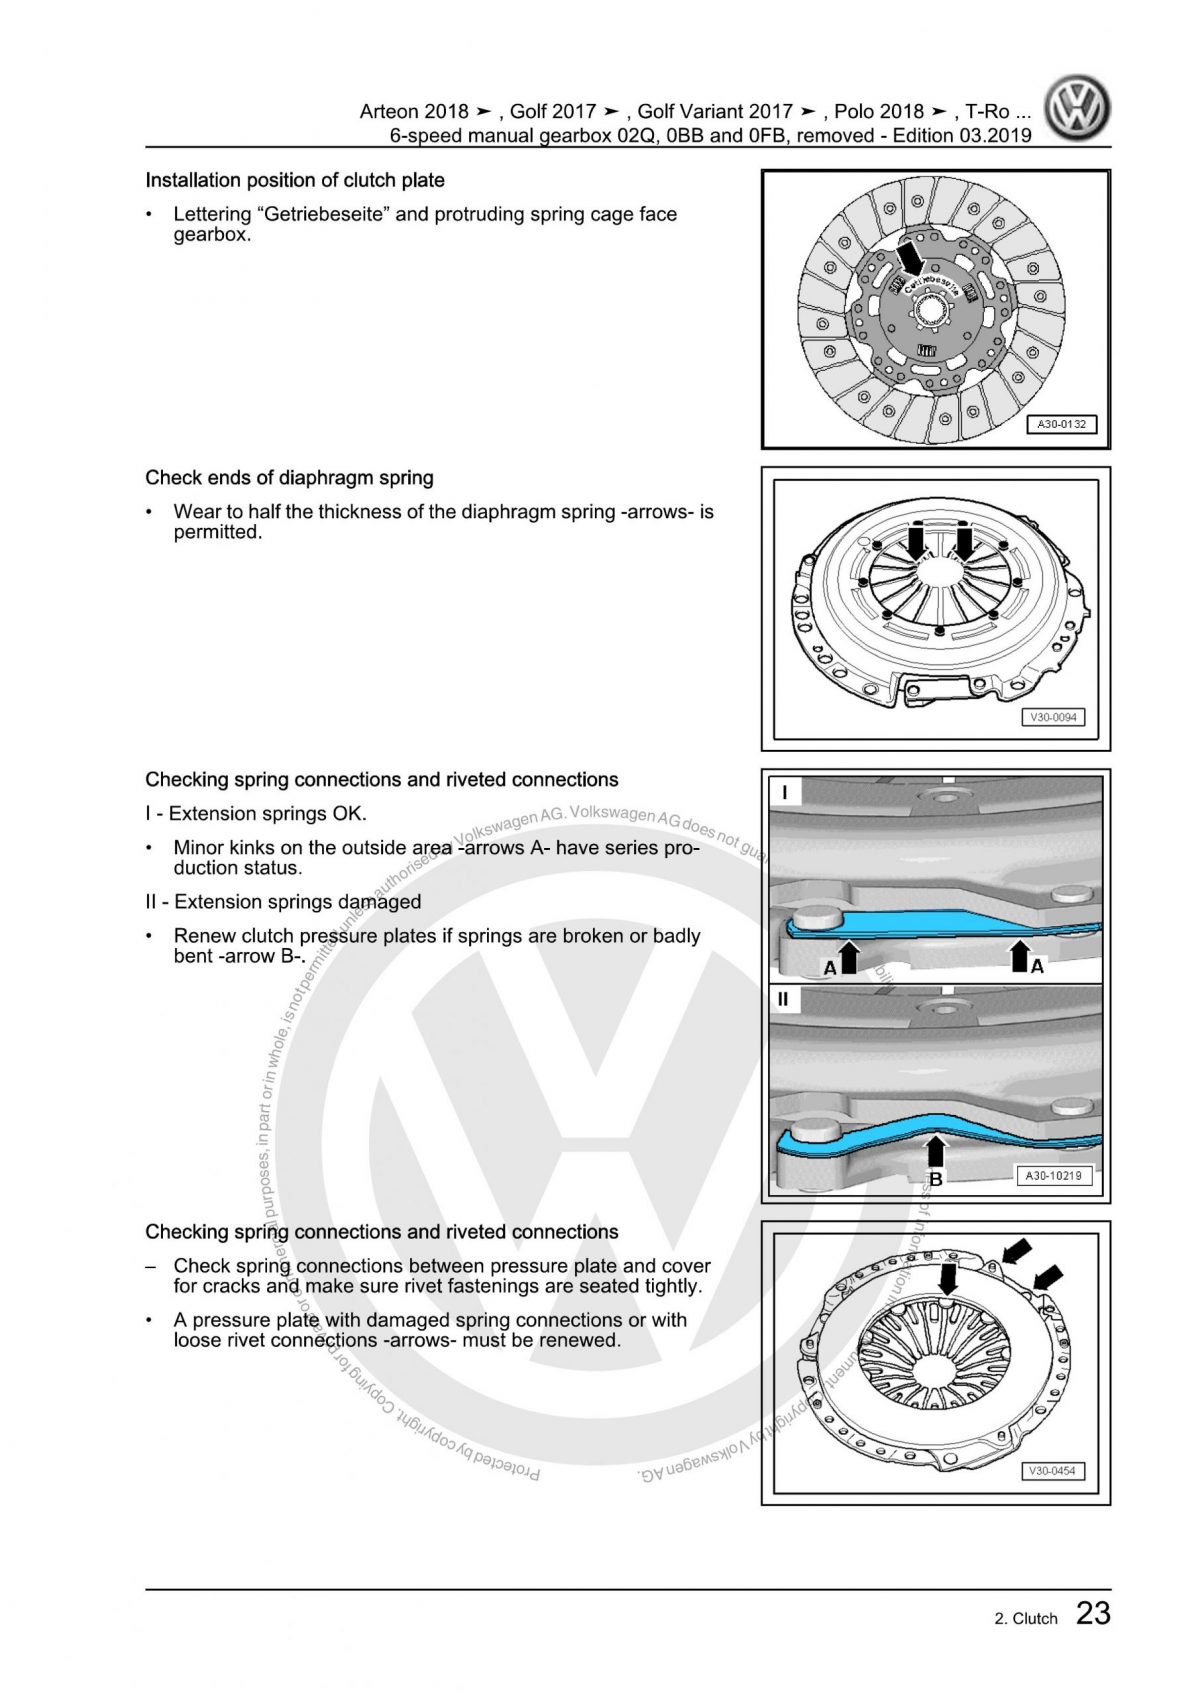 VW 6-Speed Manual Clutch Gearbox 02Q 0BB 0FB OEM Workshop Manual